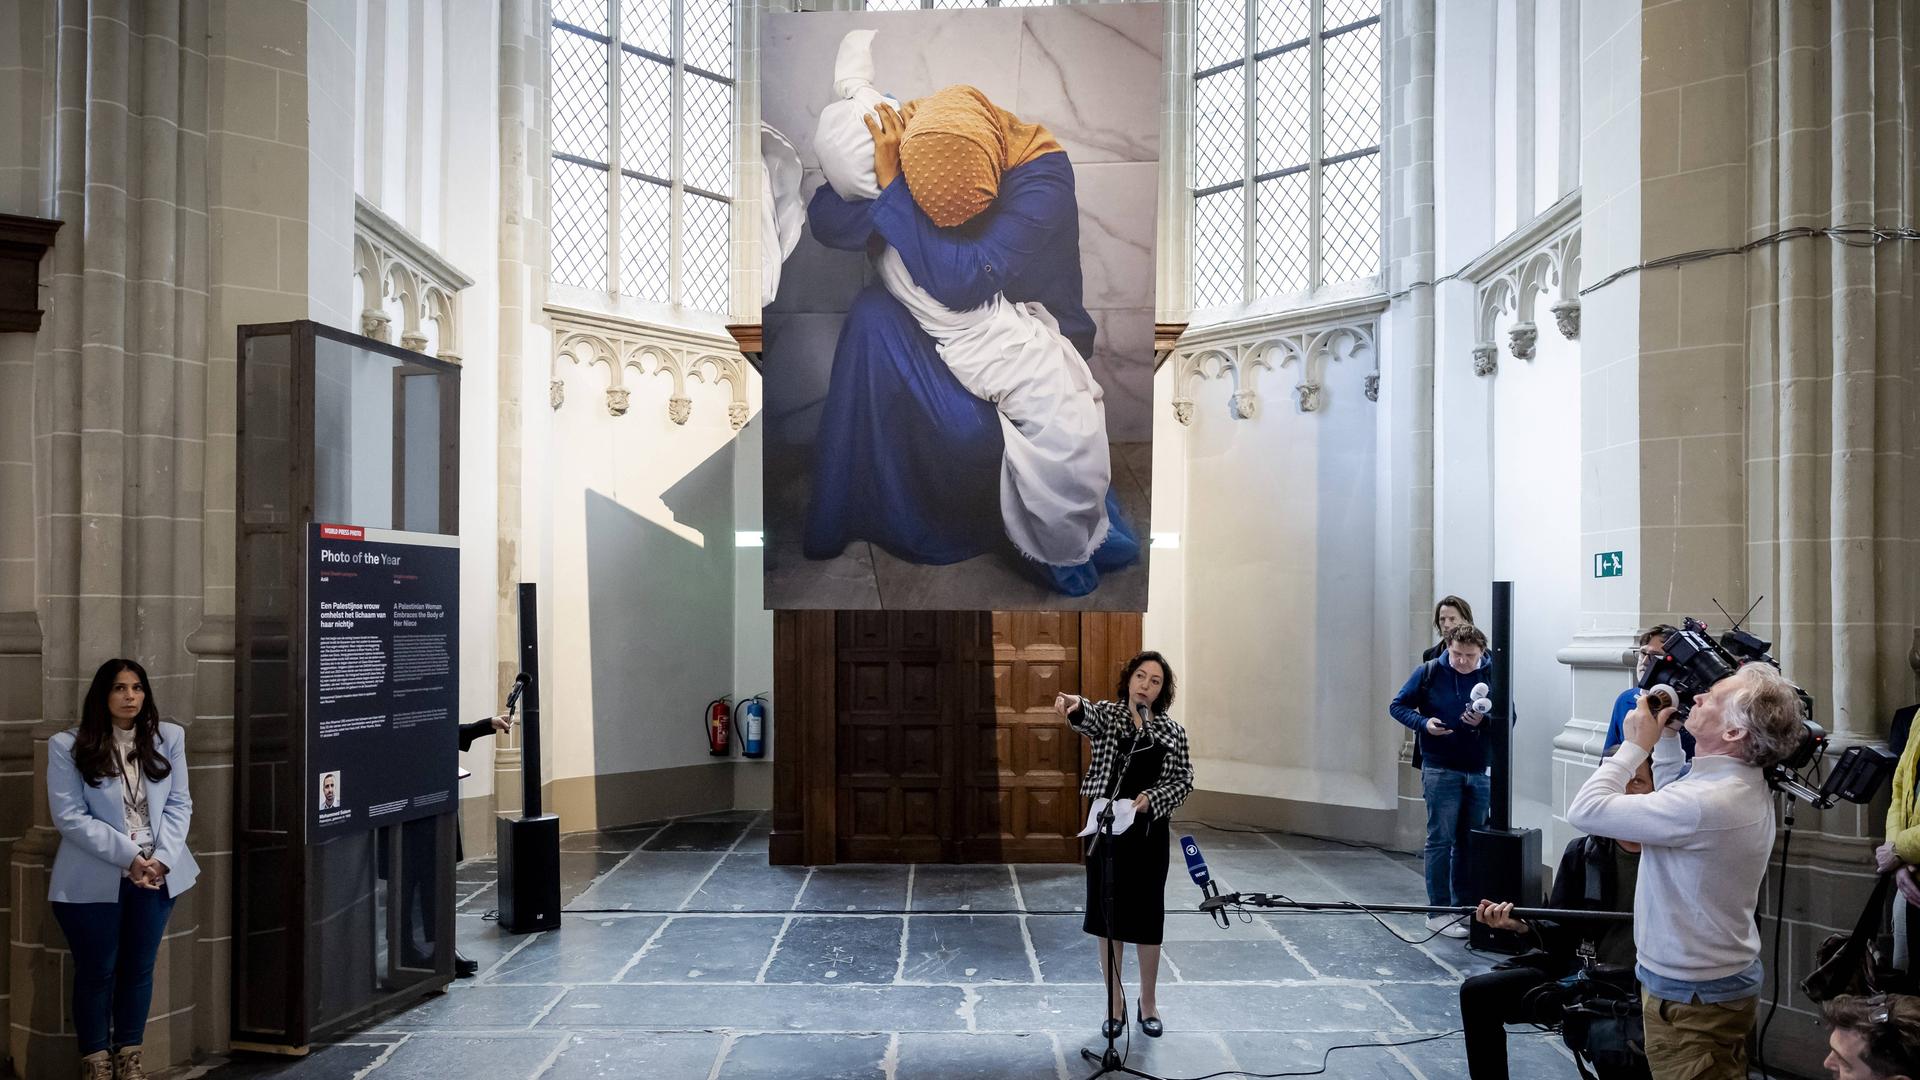 In der Nieuwe Kerk in Amsterdam werden die Sieger des "World Press Photo Awards" verkündet. Das Siegerbild hängt in riesiger Version unter der Decke. Es zeigt Ina Abu Maamar, die ein blaues Kleid und ein ockerfarbenes Kopftuch trägt. Sie beugt sich über den in ein weißes Laken gehüllten Leichnam ihrer fünf Jahre alten Nichte Saly.